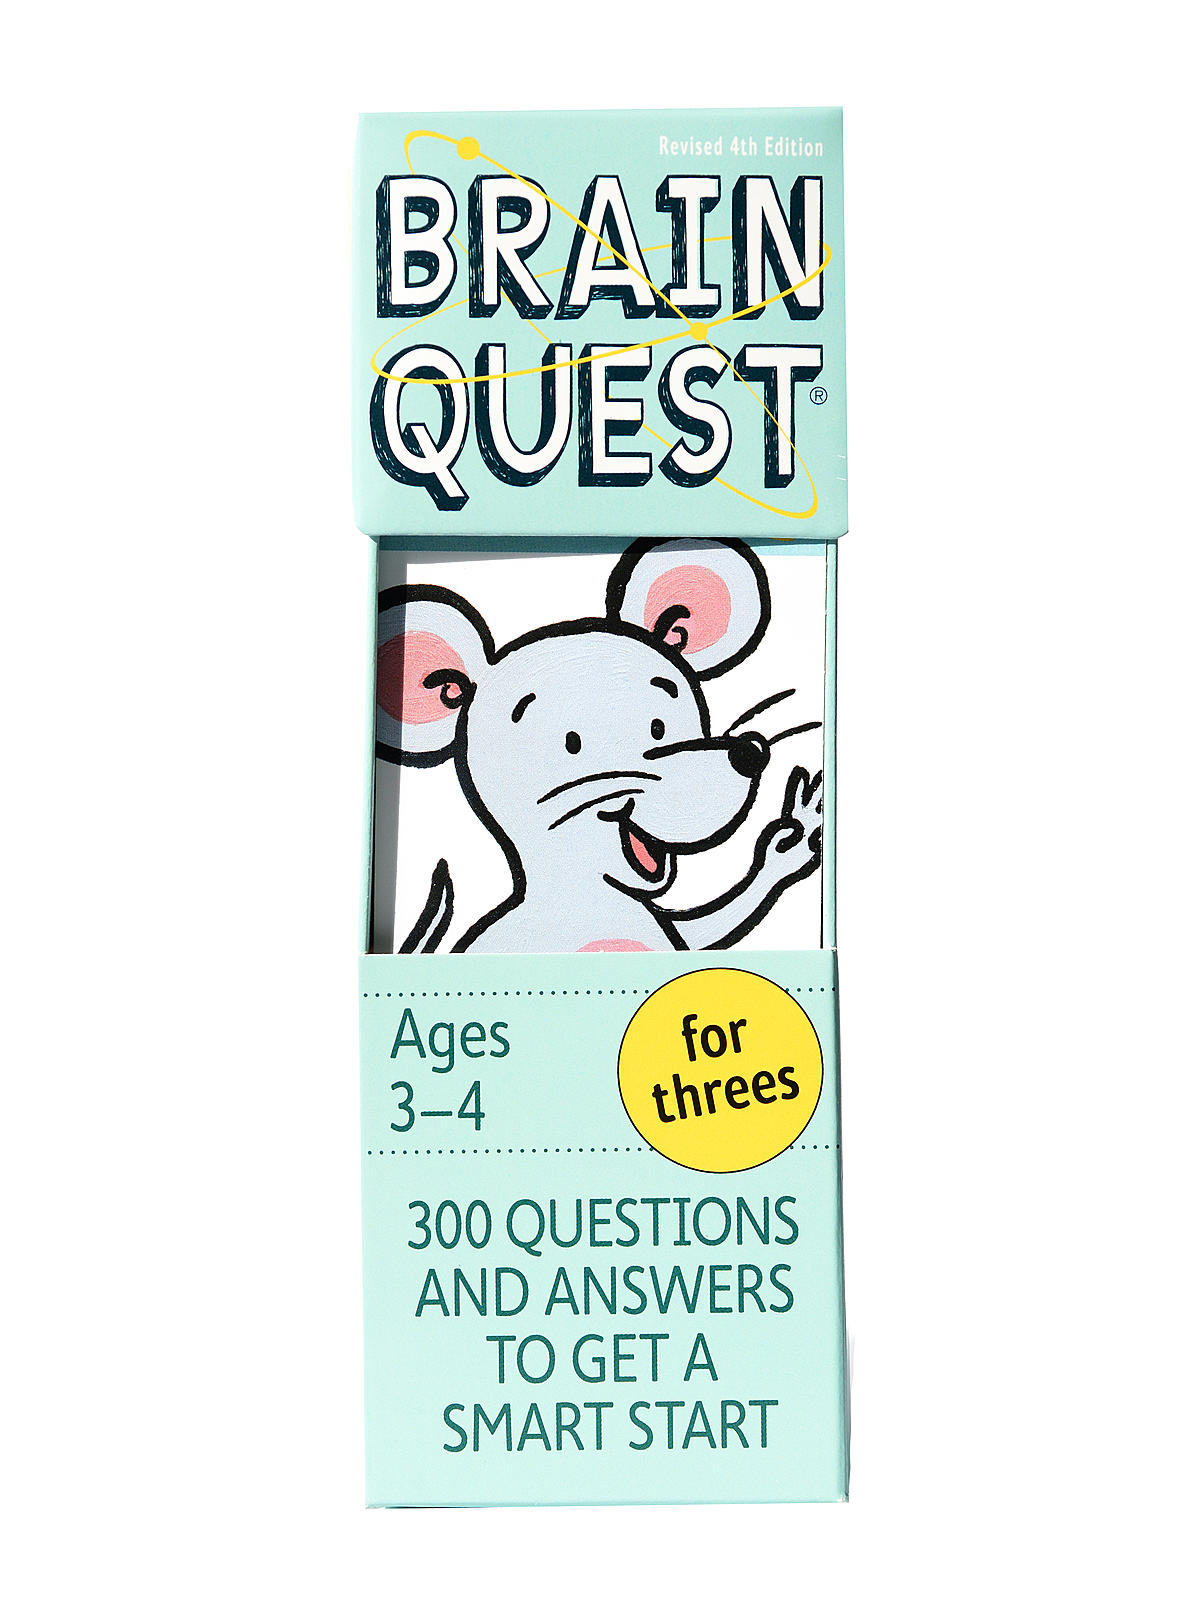 Brain Quest Brain Quest For Threes